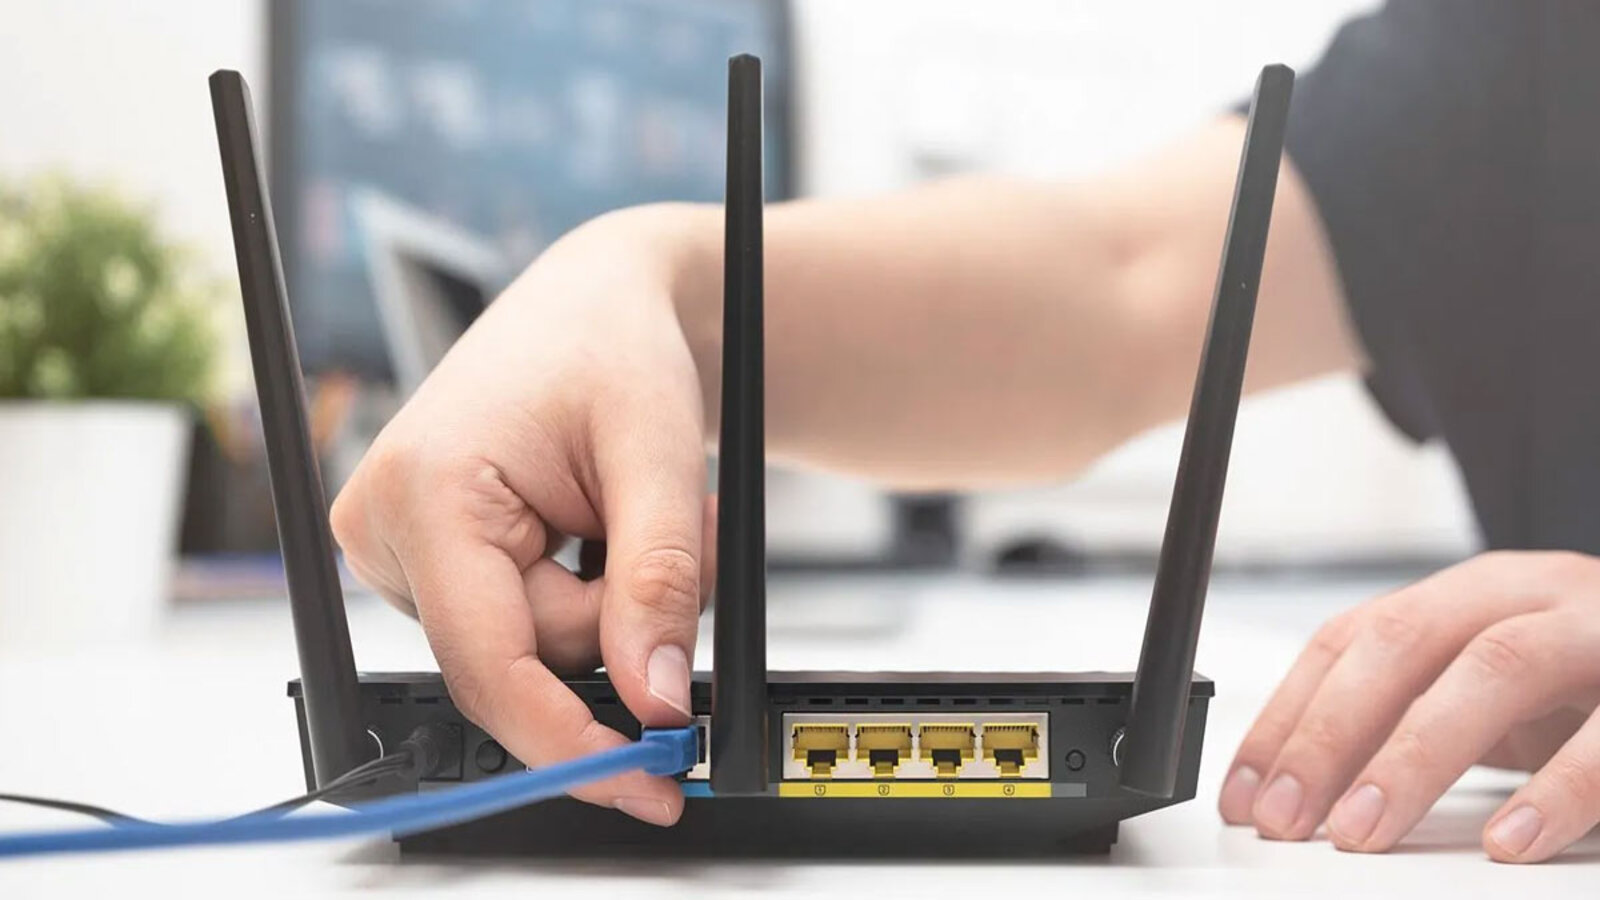 massimizza-la-tua-connessione-wi-fi-eliminando-le-interferenze-in-casa